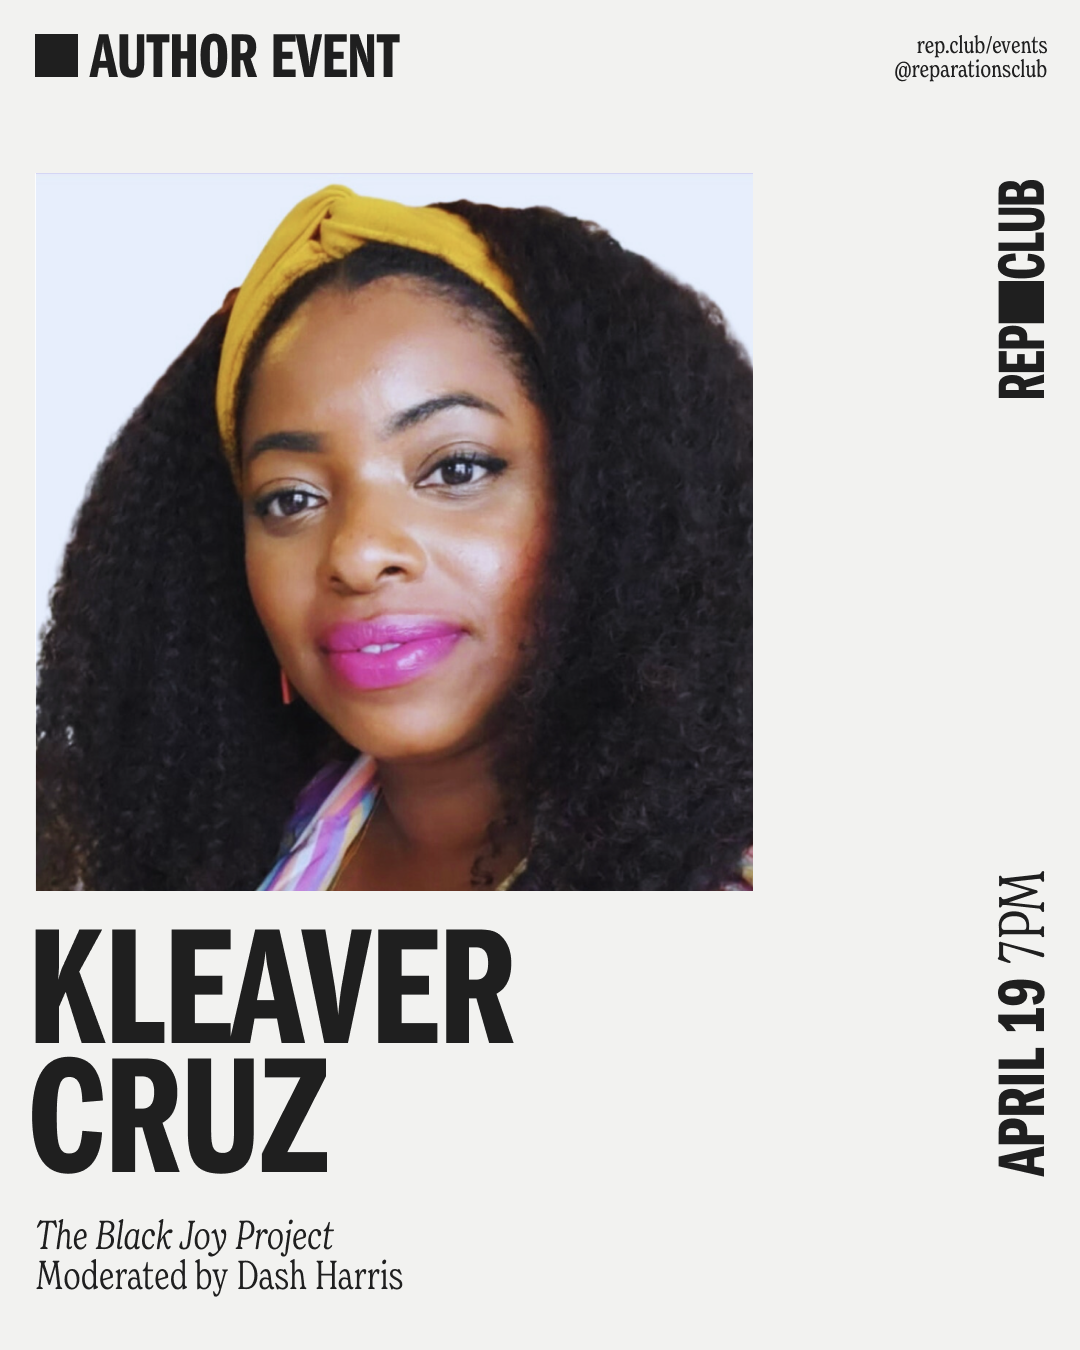 April 19th EVENT: The Black Joy Project // Kleaver Cruz + Dash Harris